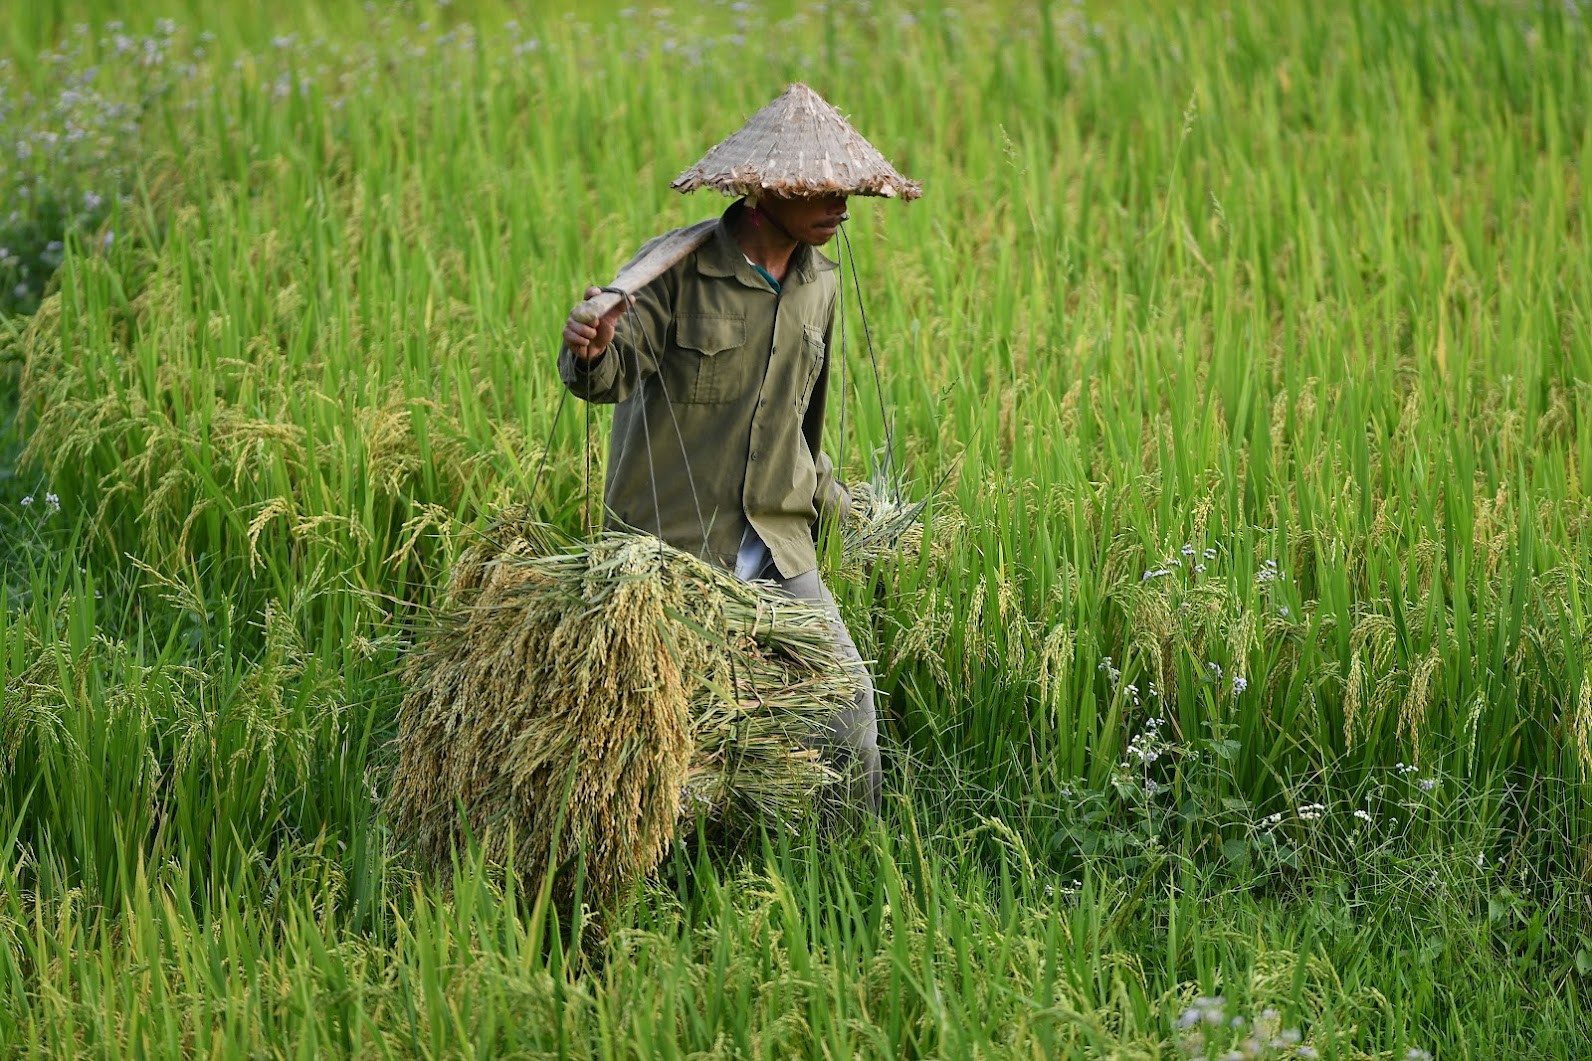 Giá gạo lên đỉnh, Việt Nam cần chớp thời cơ xuất khẩu - Ảnh 1.